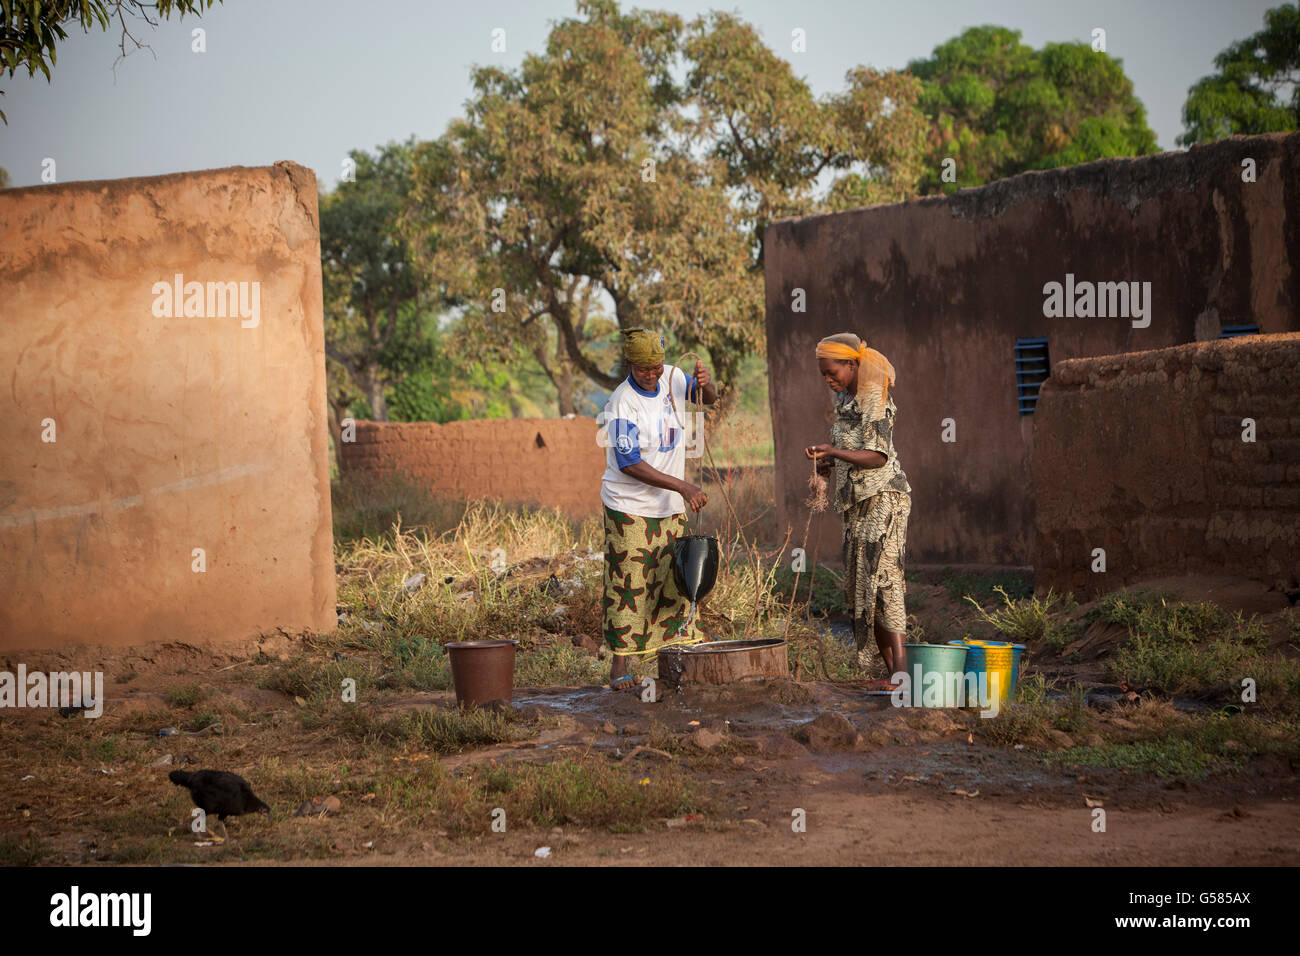 Les femmes de tirer de l'eau d'un puits peu profond dans la région de Bobo Dioulasso, Burkina Faso Ministère. Banque D'Images